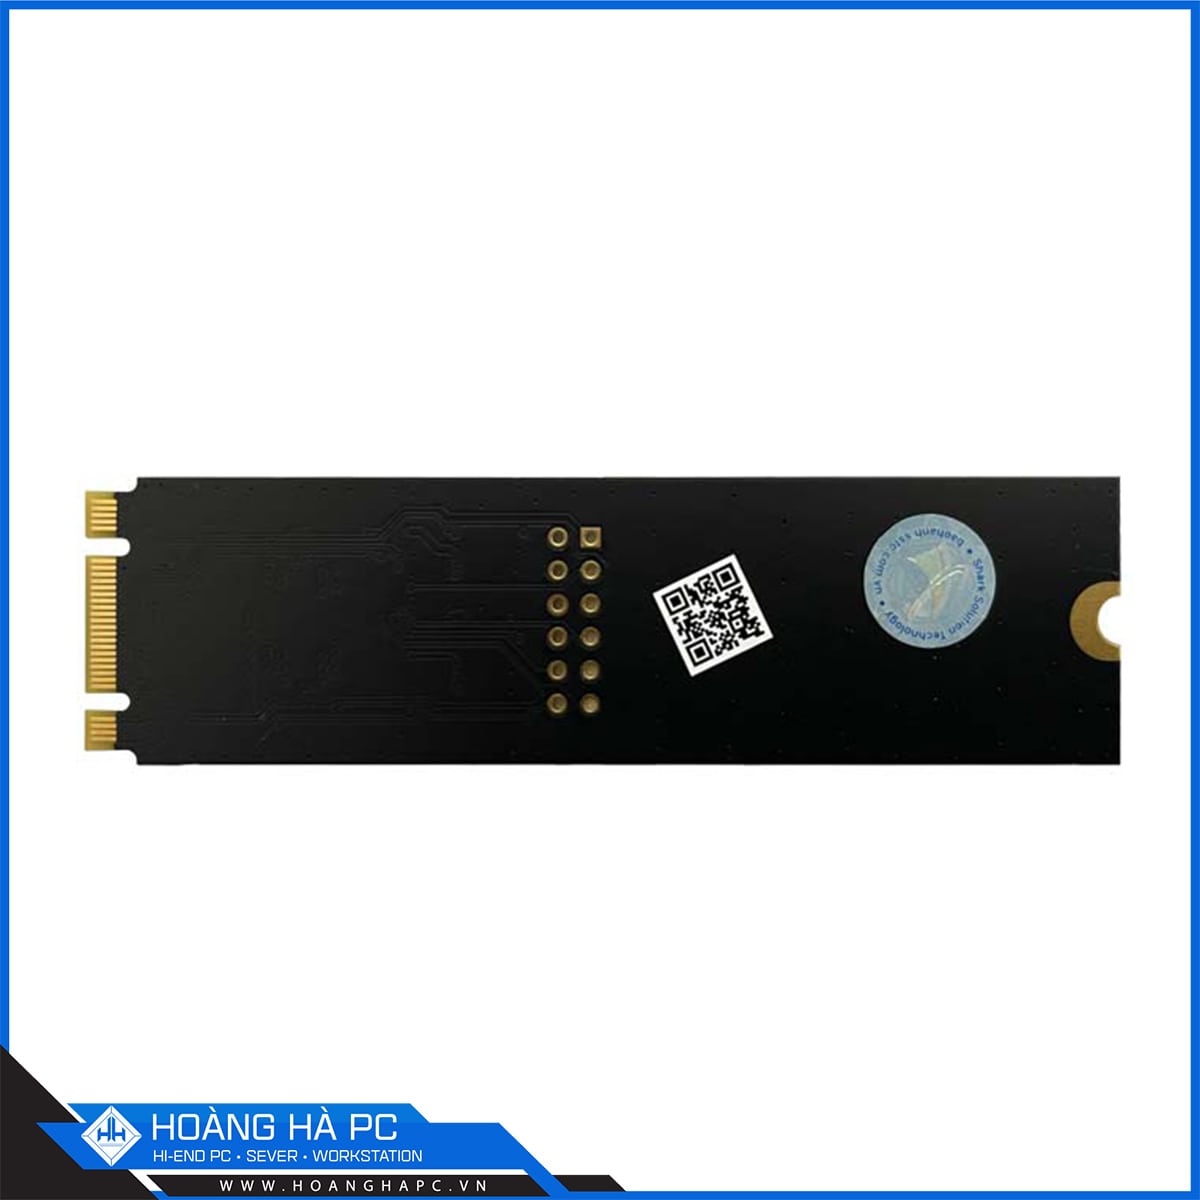 Ổ cứng SSD 256G Verico Hawk NVMe PCIe Gen3x2 M.2 2280 (Đọc 1600B/s - Ghi 850MB/s)